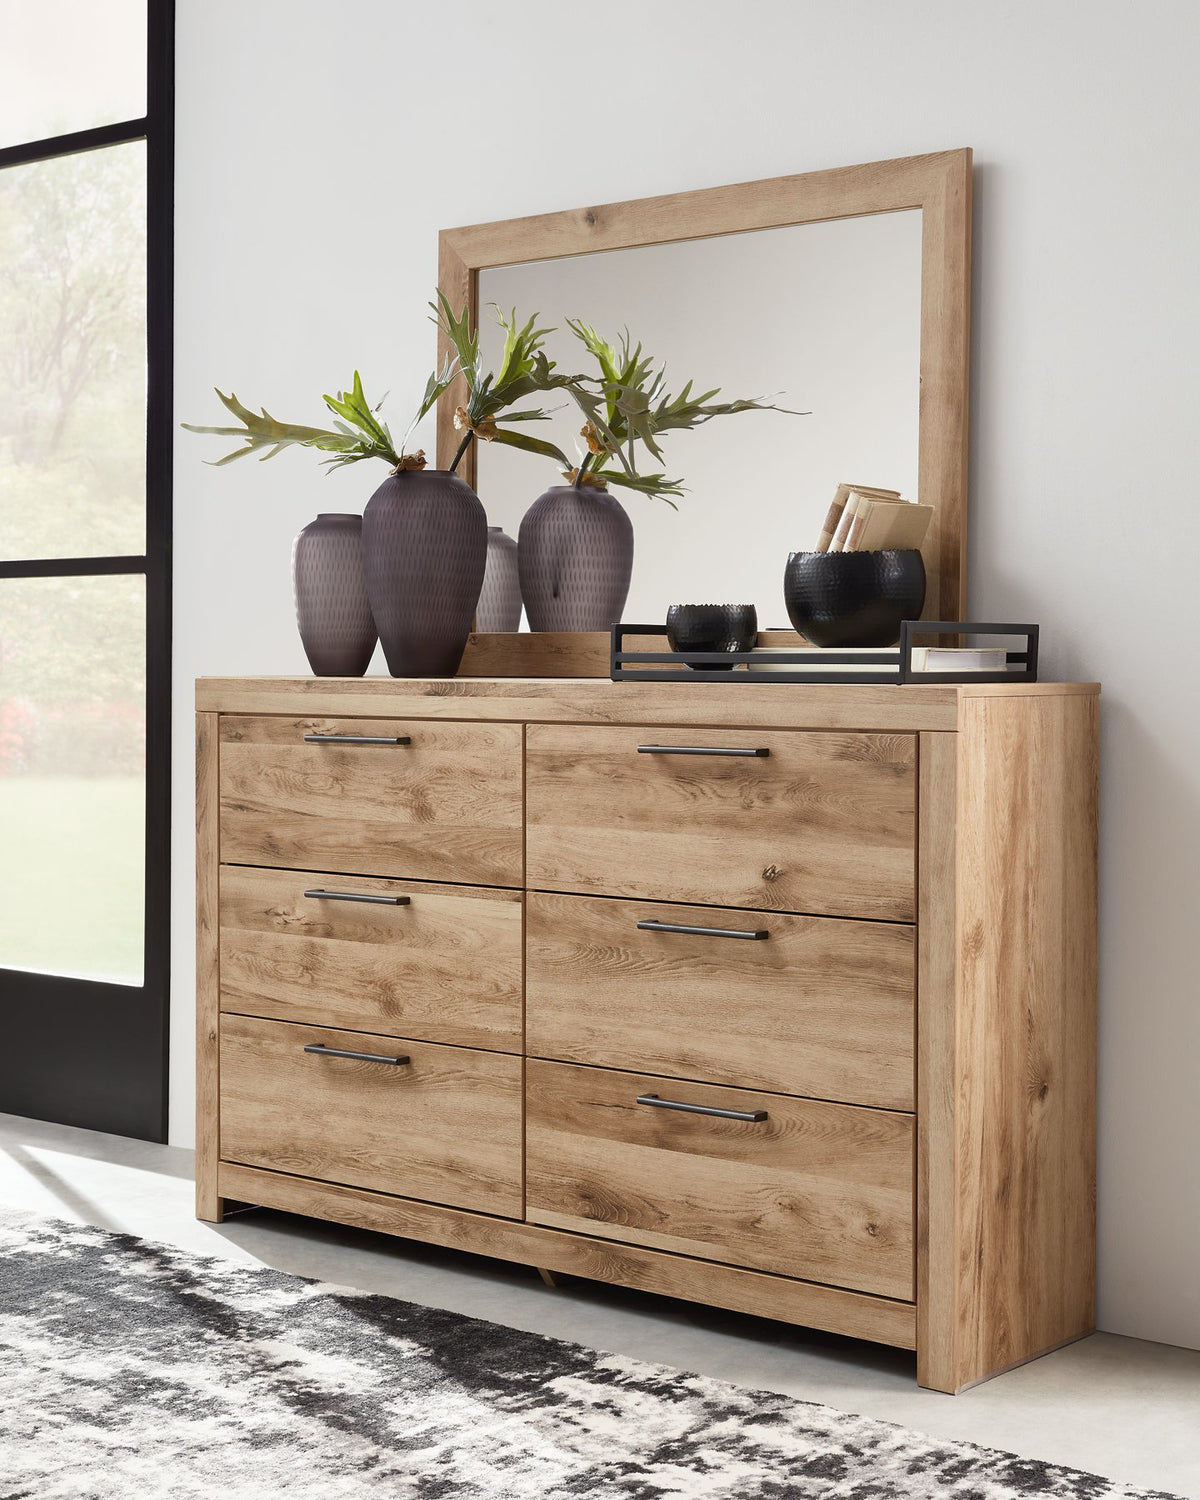 Hyanna Dresser and Mirror - Half Price Furniture